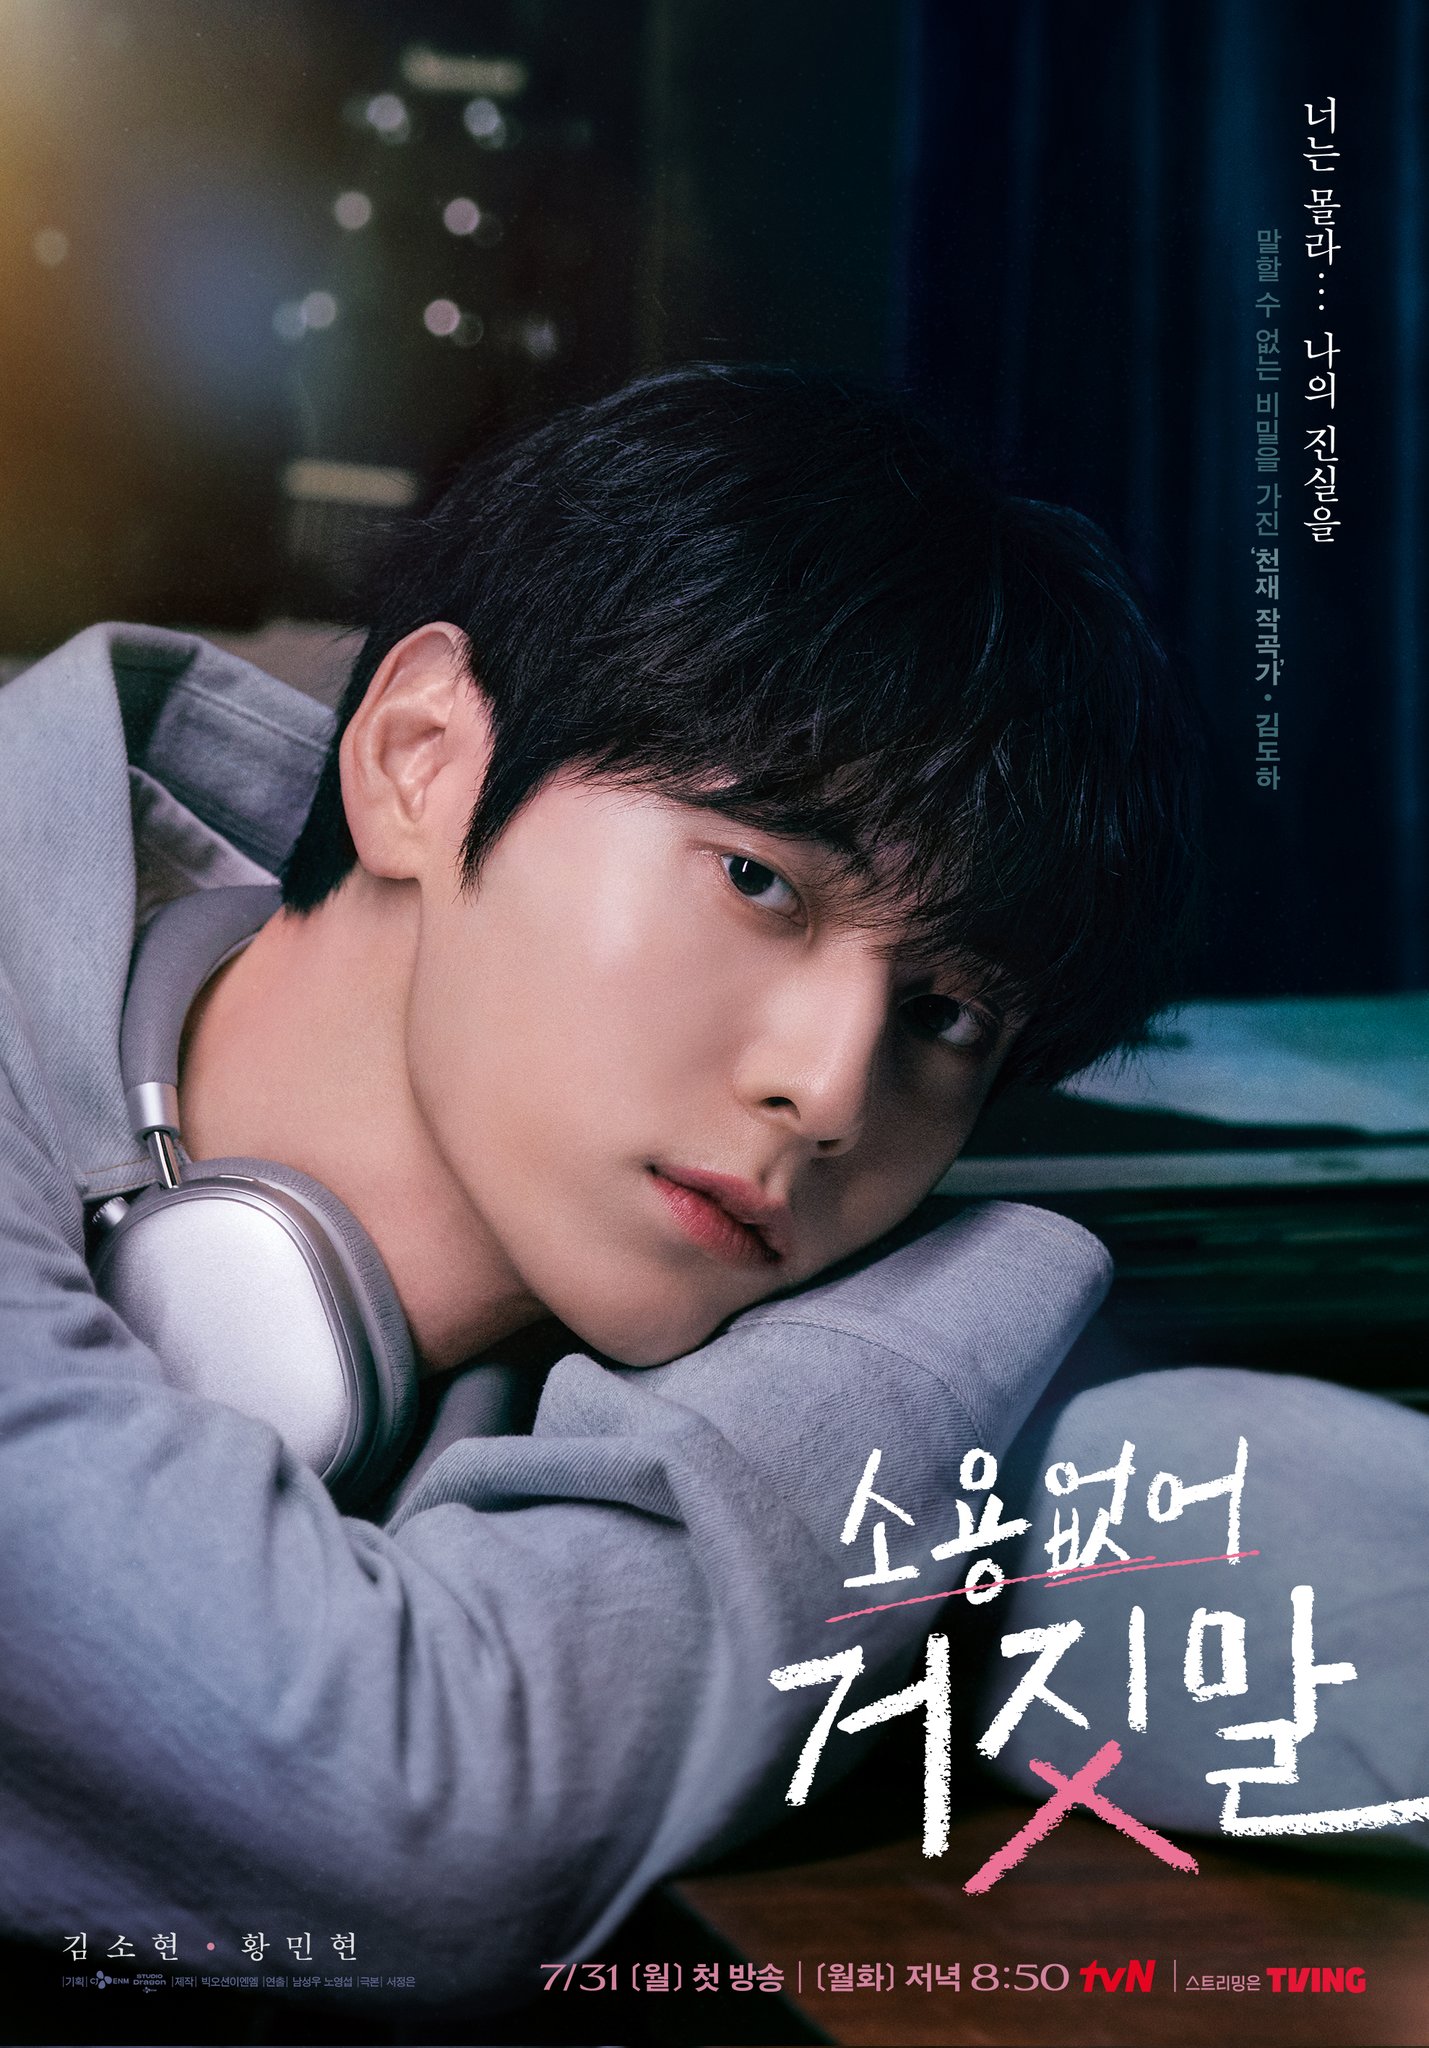 Poster hoang dã đáng yêu của tôi;  Nguồn ảnh: tvN